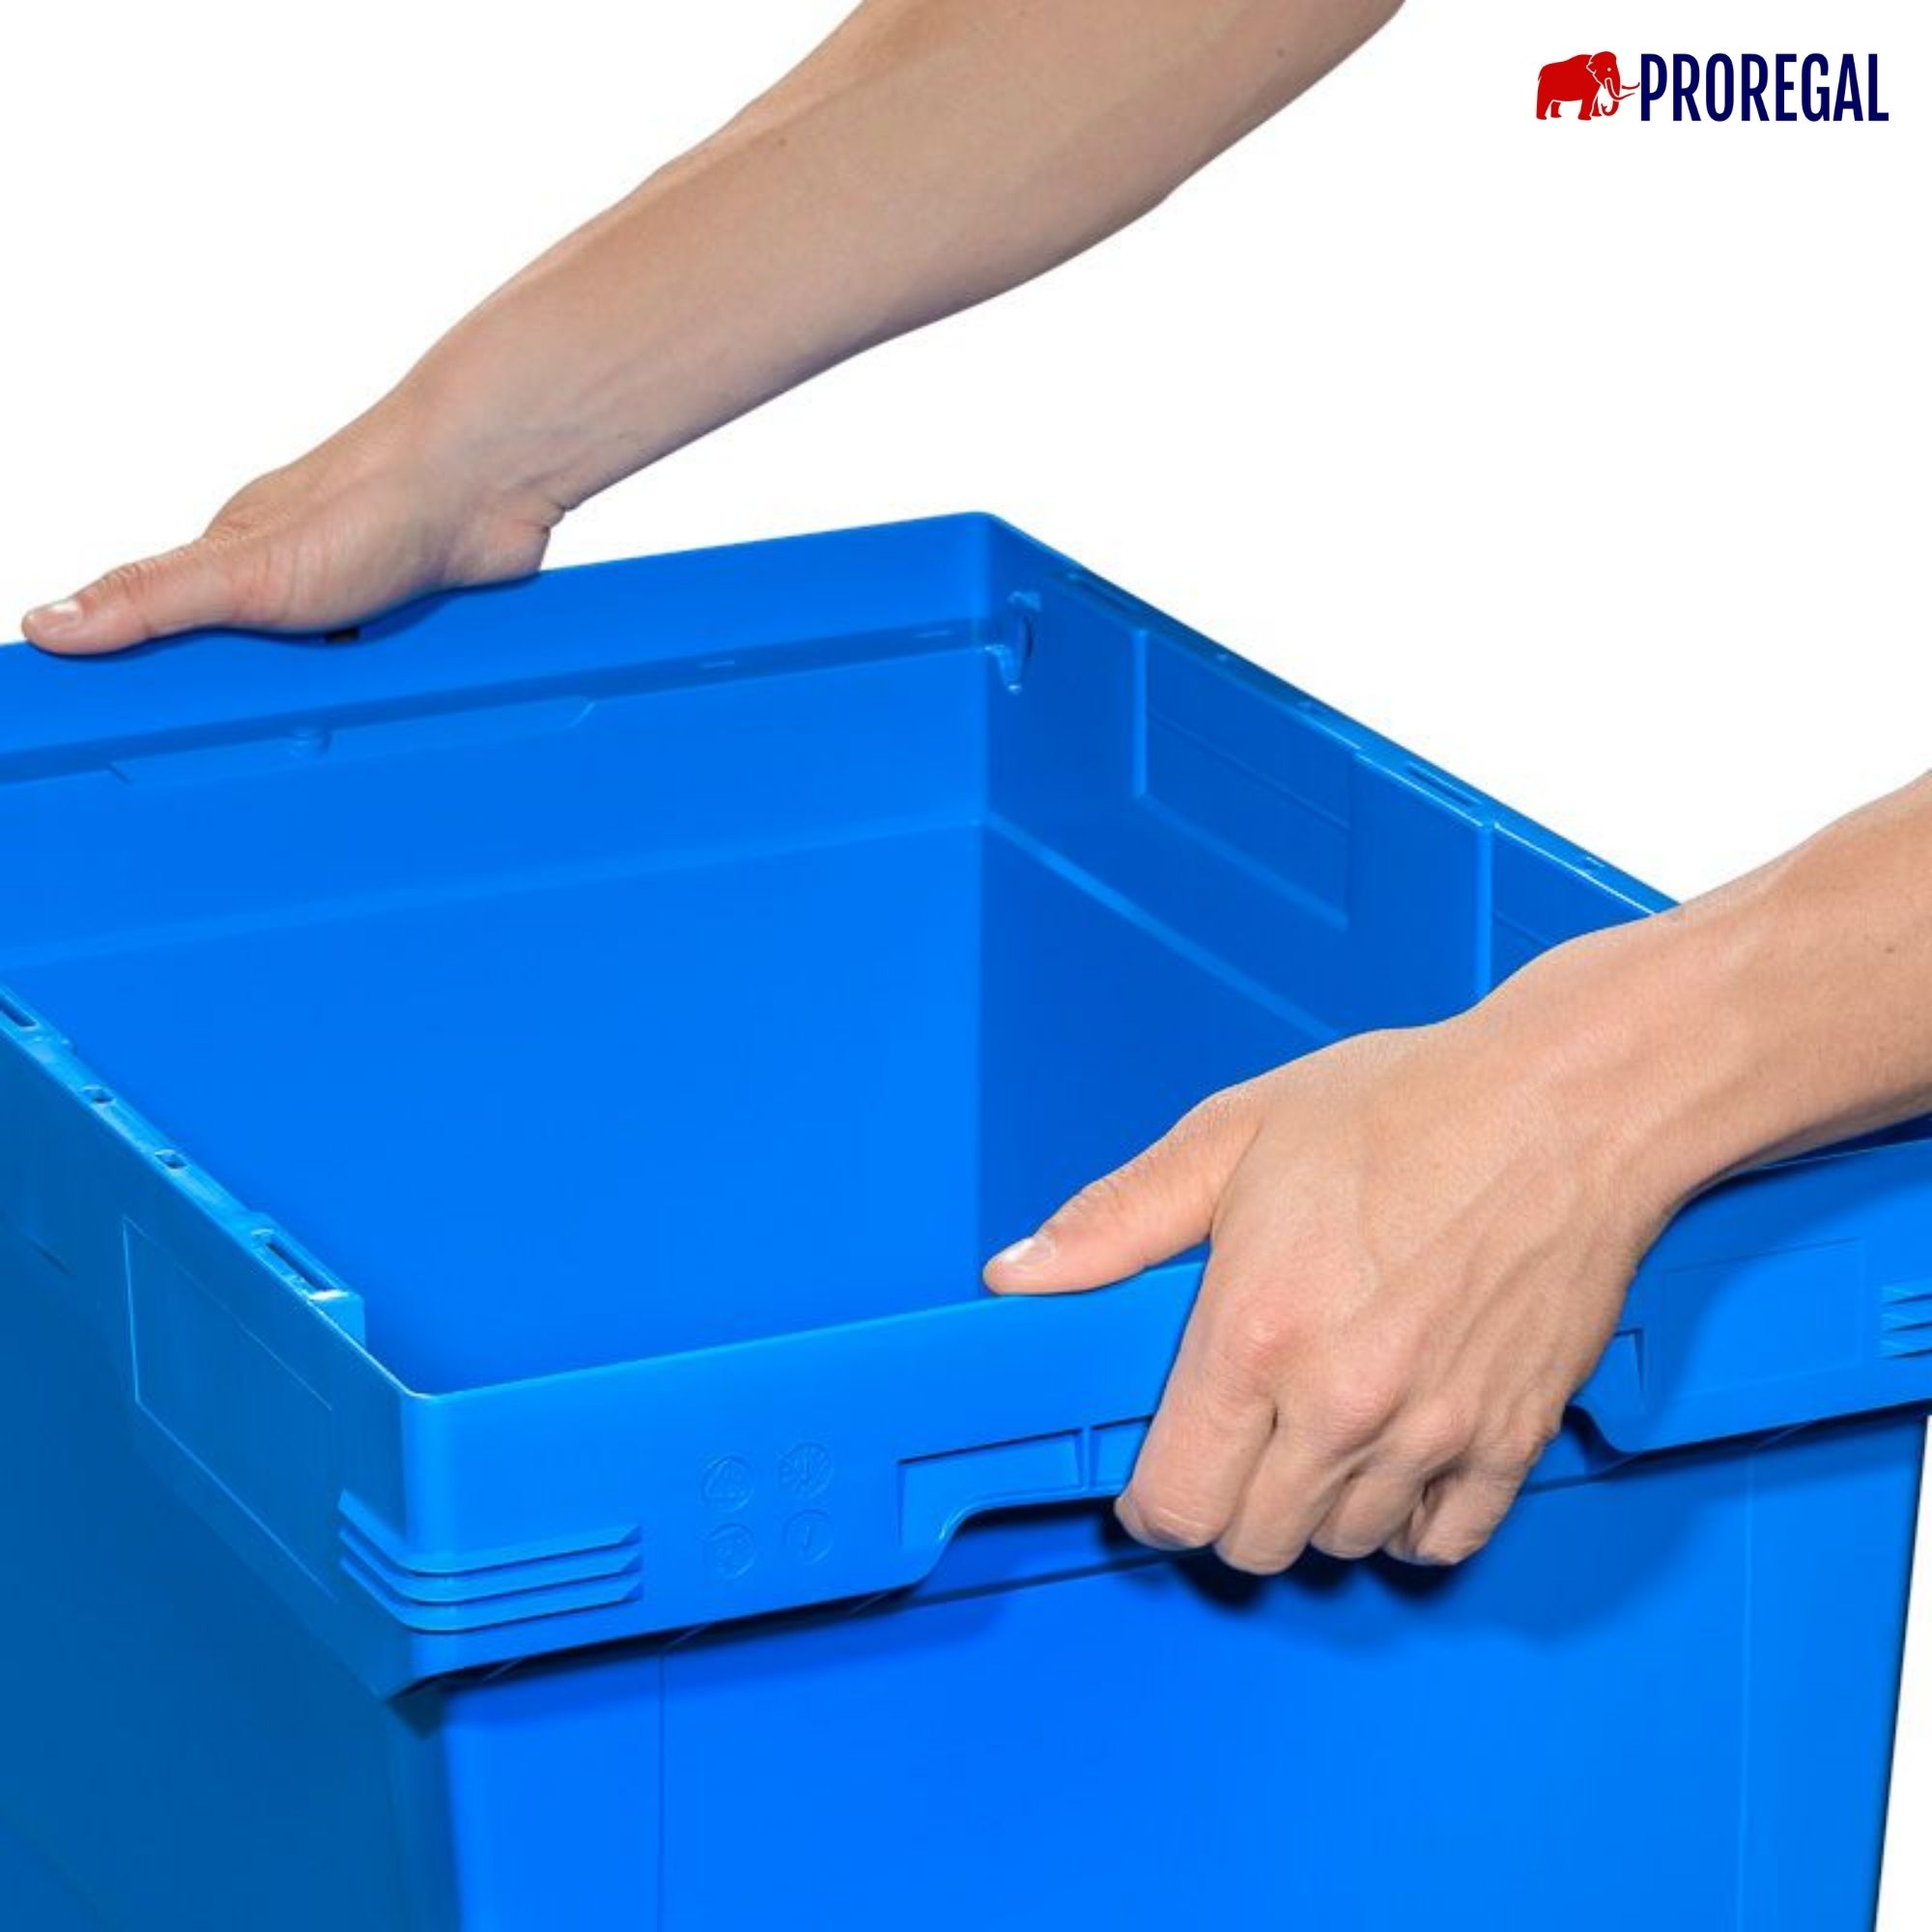 Conical Mehrweg-Stapelbehälter mit Stapelbügel Blau | HxBxT 32,3x40x60cm | 58 Liter | Lagerbox Eurobox Transportbox Transportbehälter Stapelbehälter